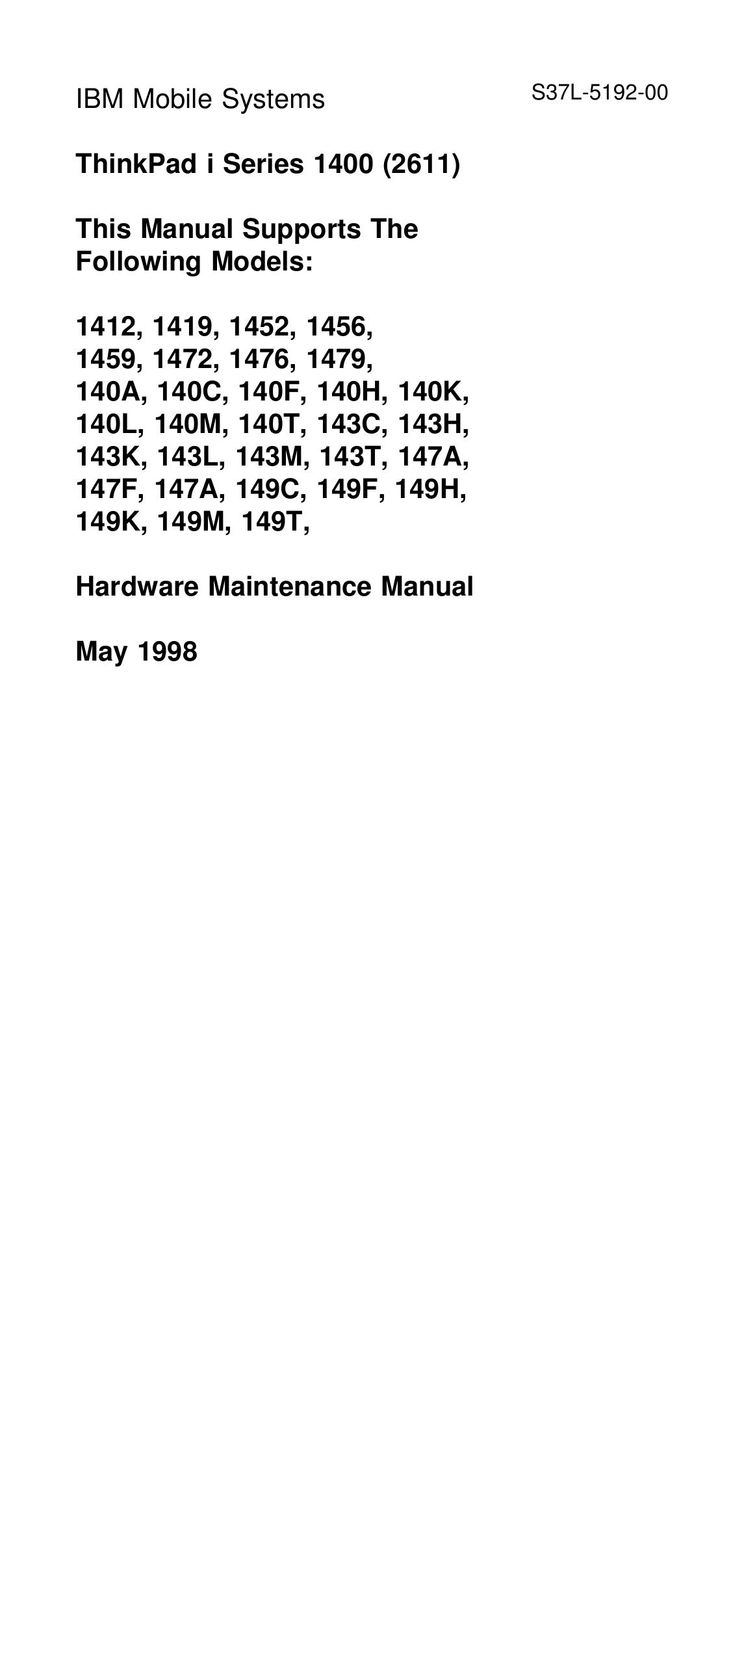 IBM 140C Laptop User Manual